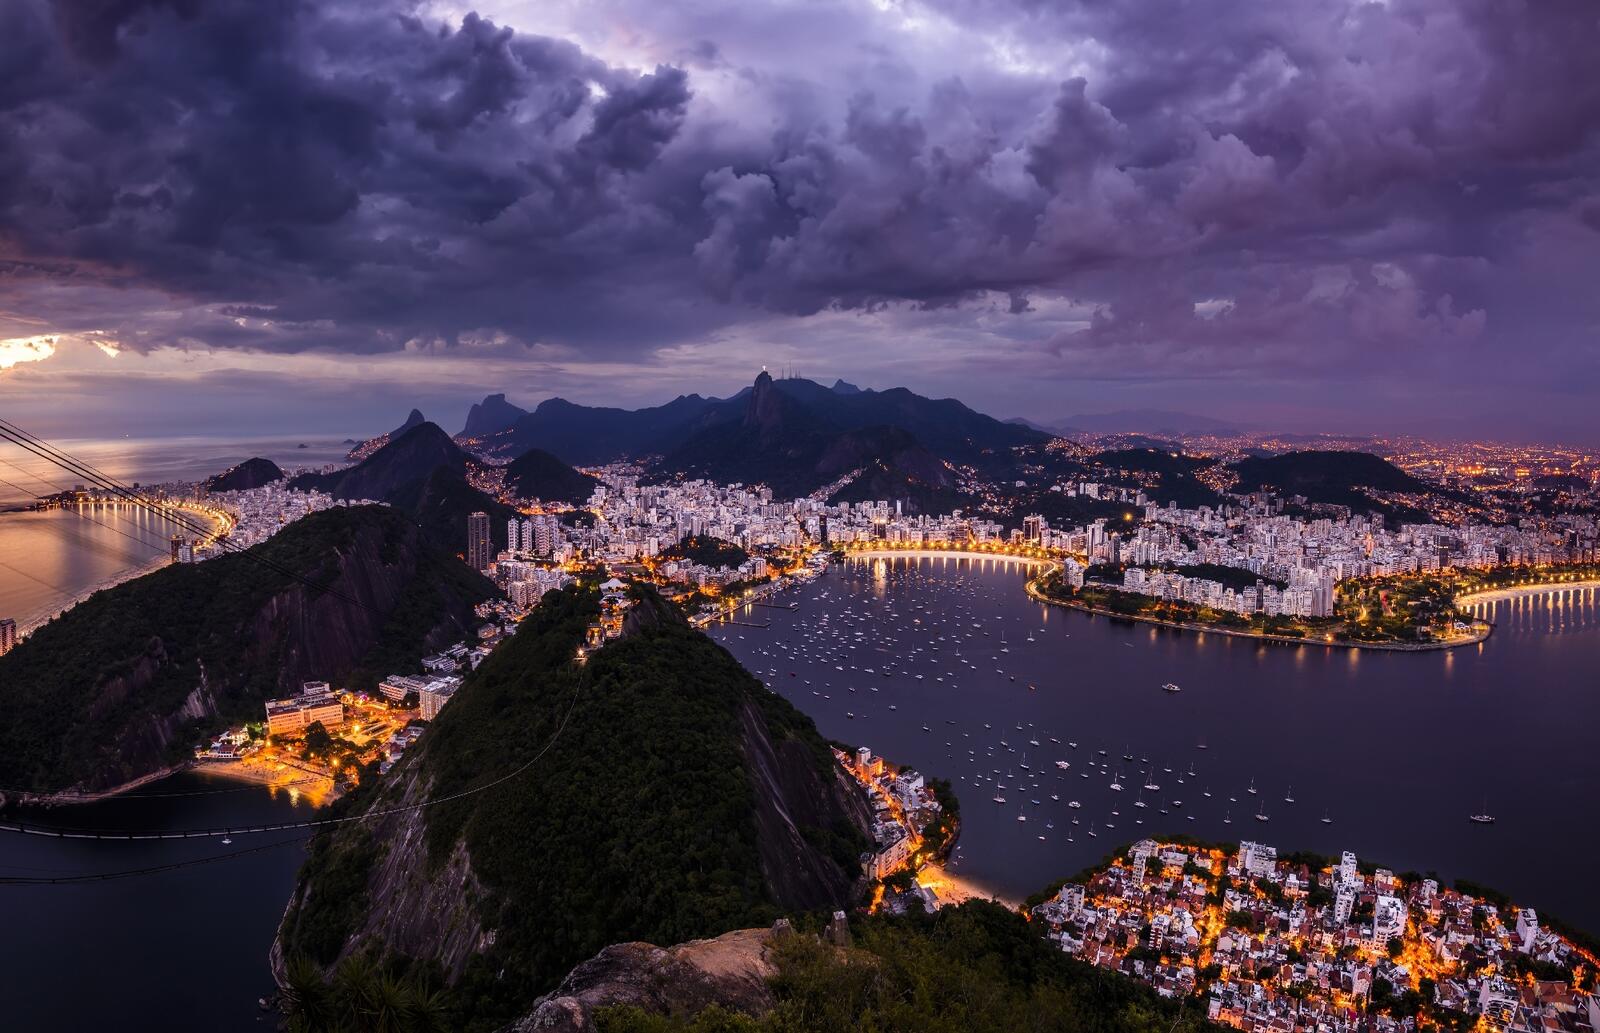 Free photo Rio de Janeiro evening view from above